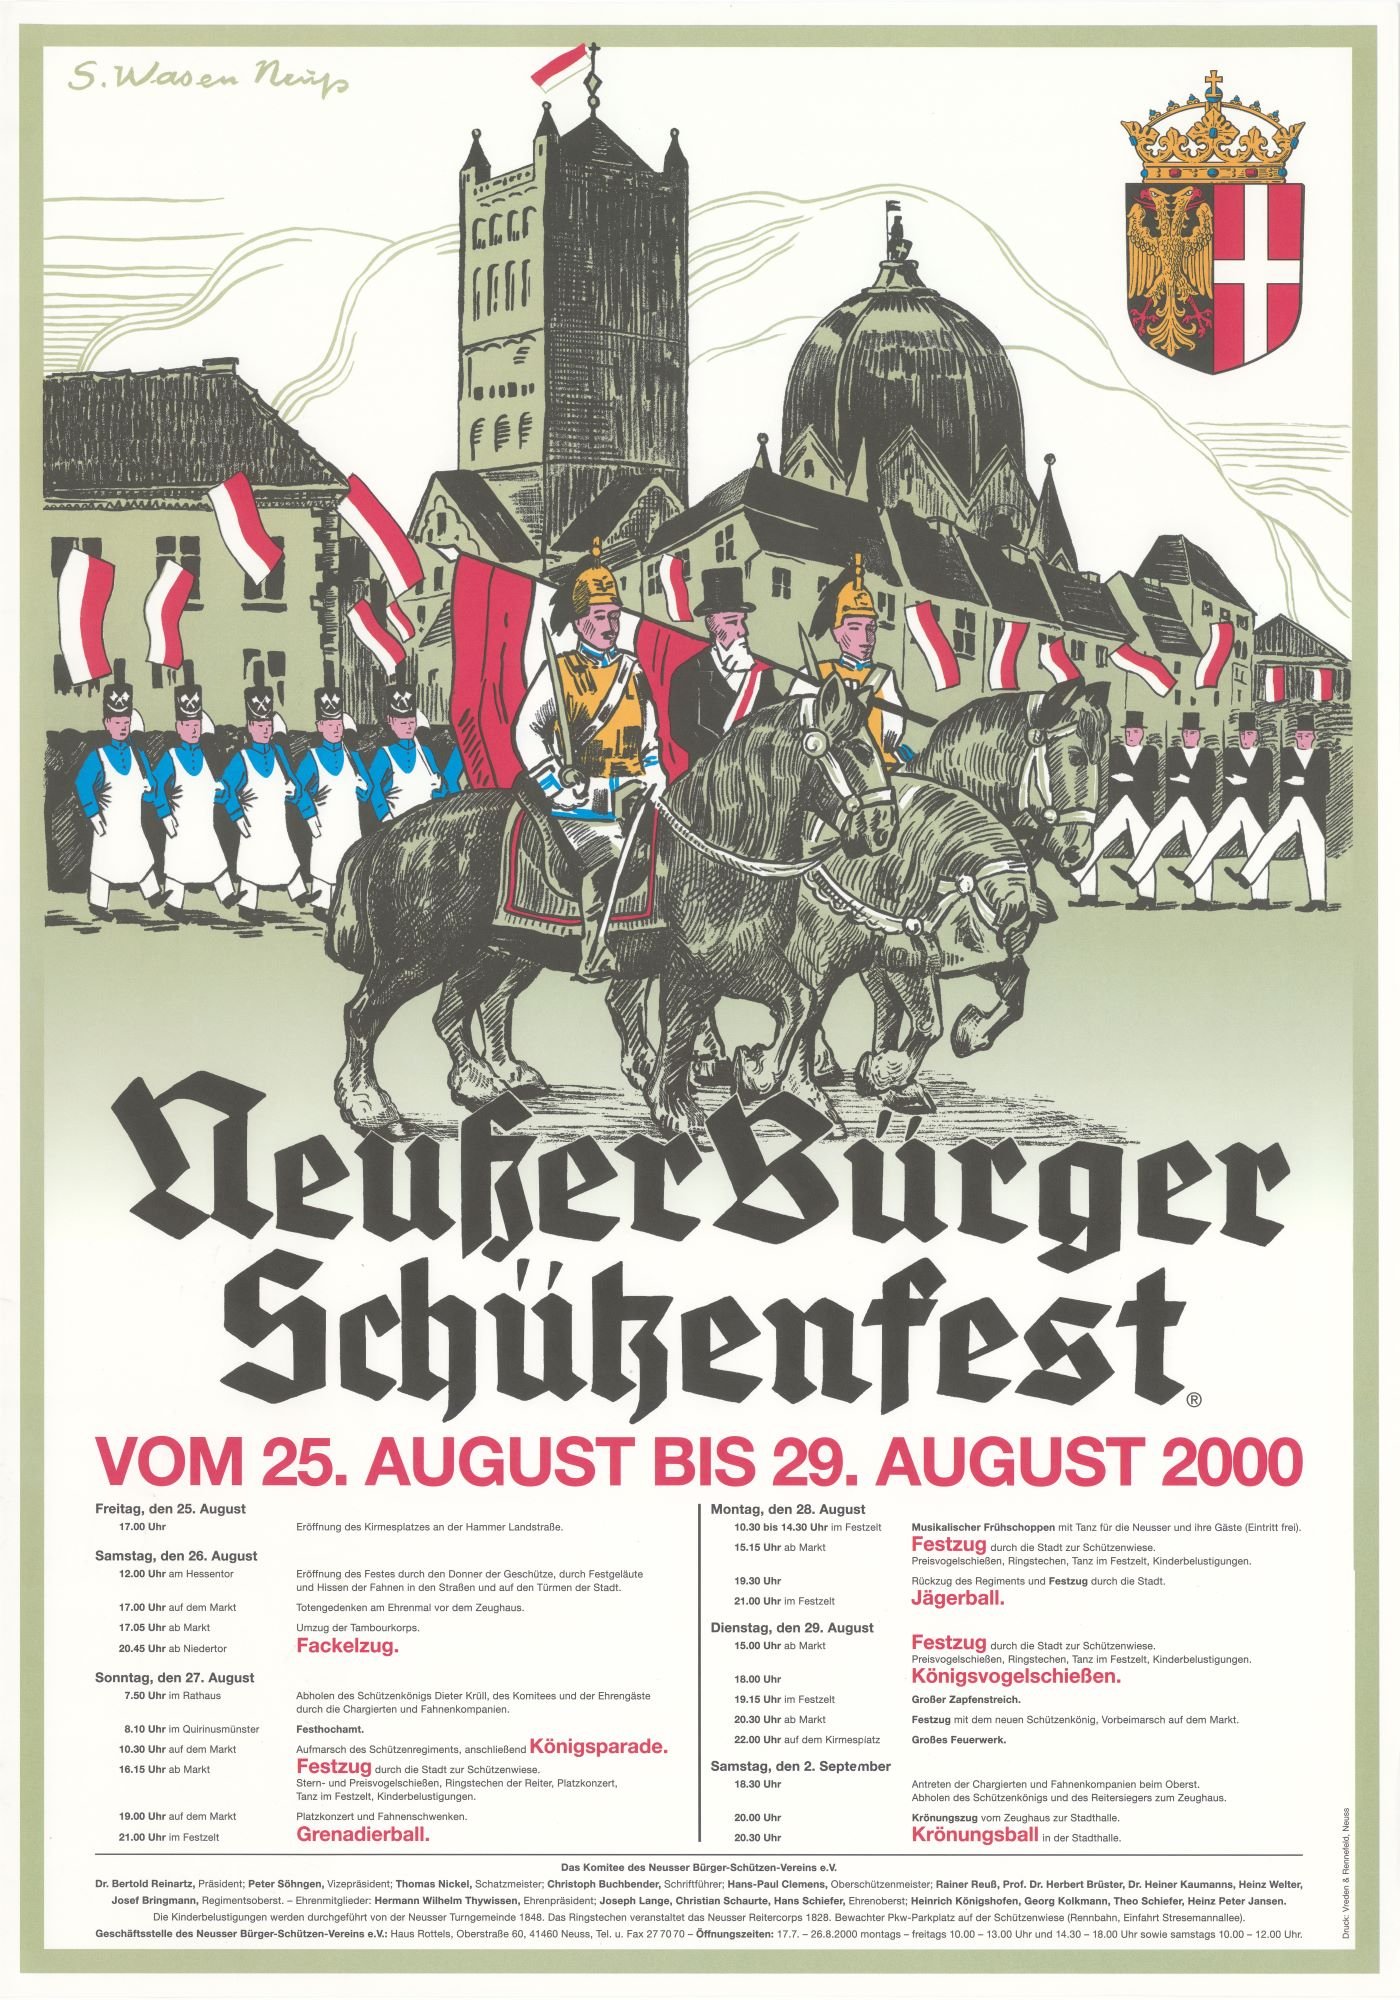 Festplakat Schützenfest Neuss 2000 (Rheinisches Schützenmuseum Neuss CC BY-NC-SA)